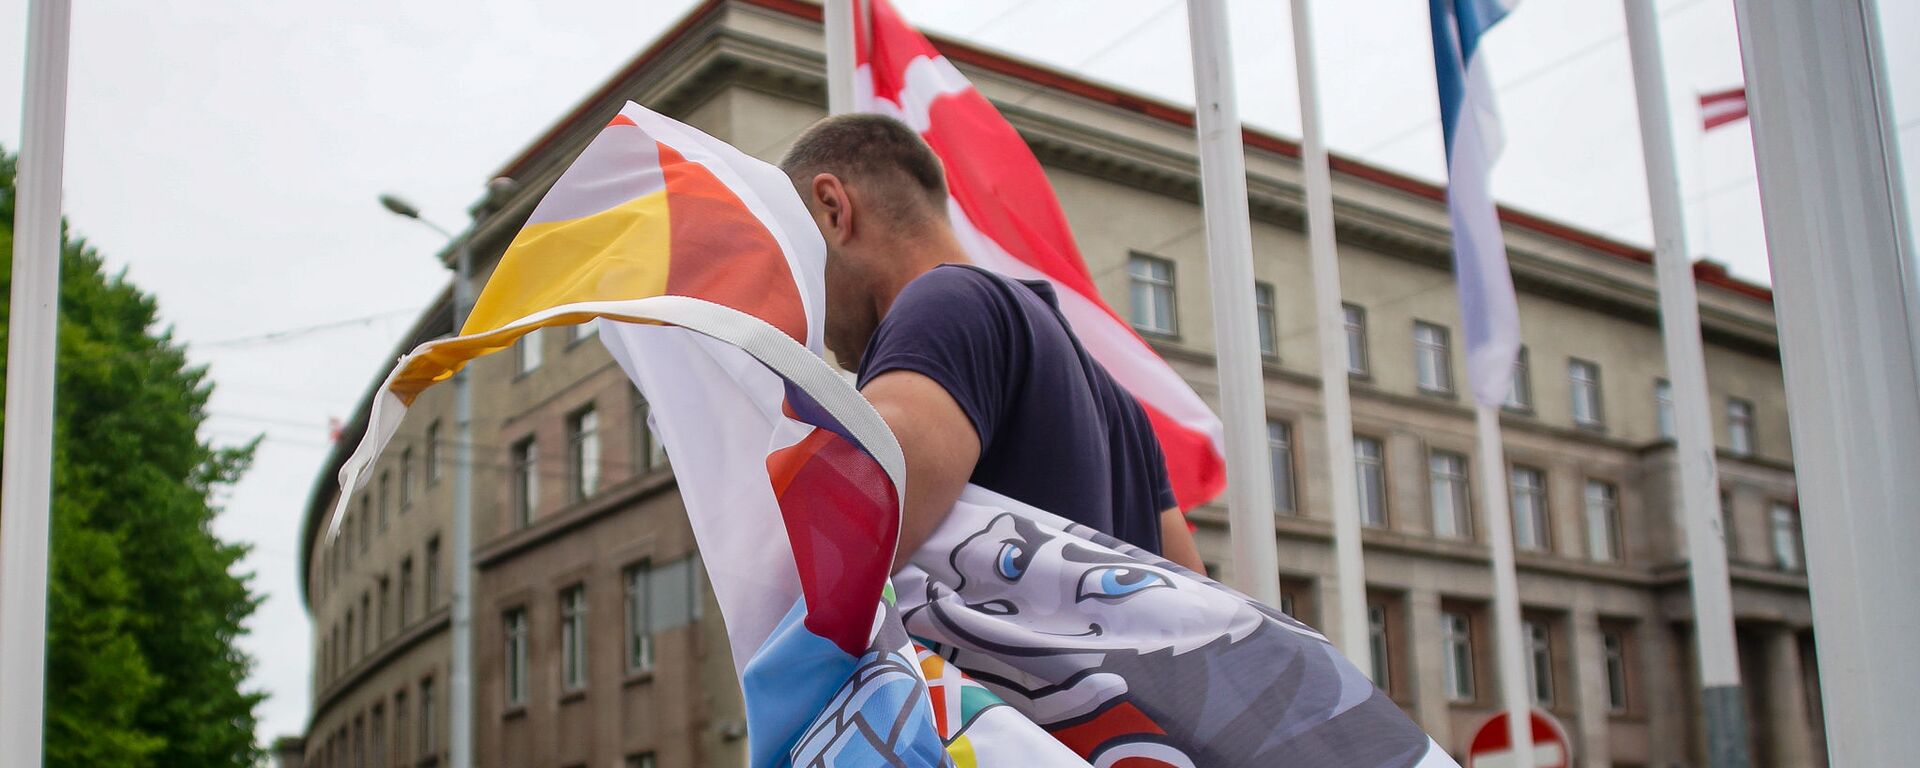 По решению мэра Риги Мартиньша Стакиса все флаги Международной федерации хоккея заменены на флаги города Риги - Sputnik Латвия, 1920, 29.05.2021